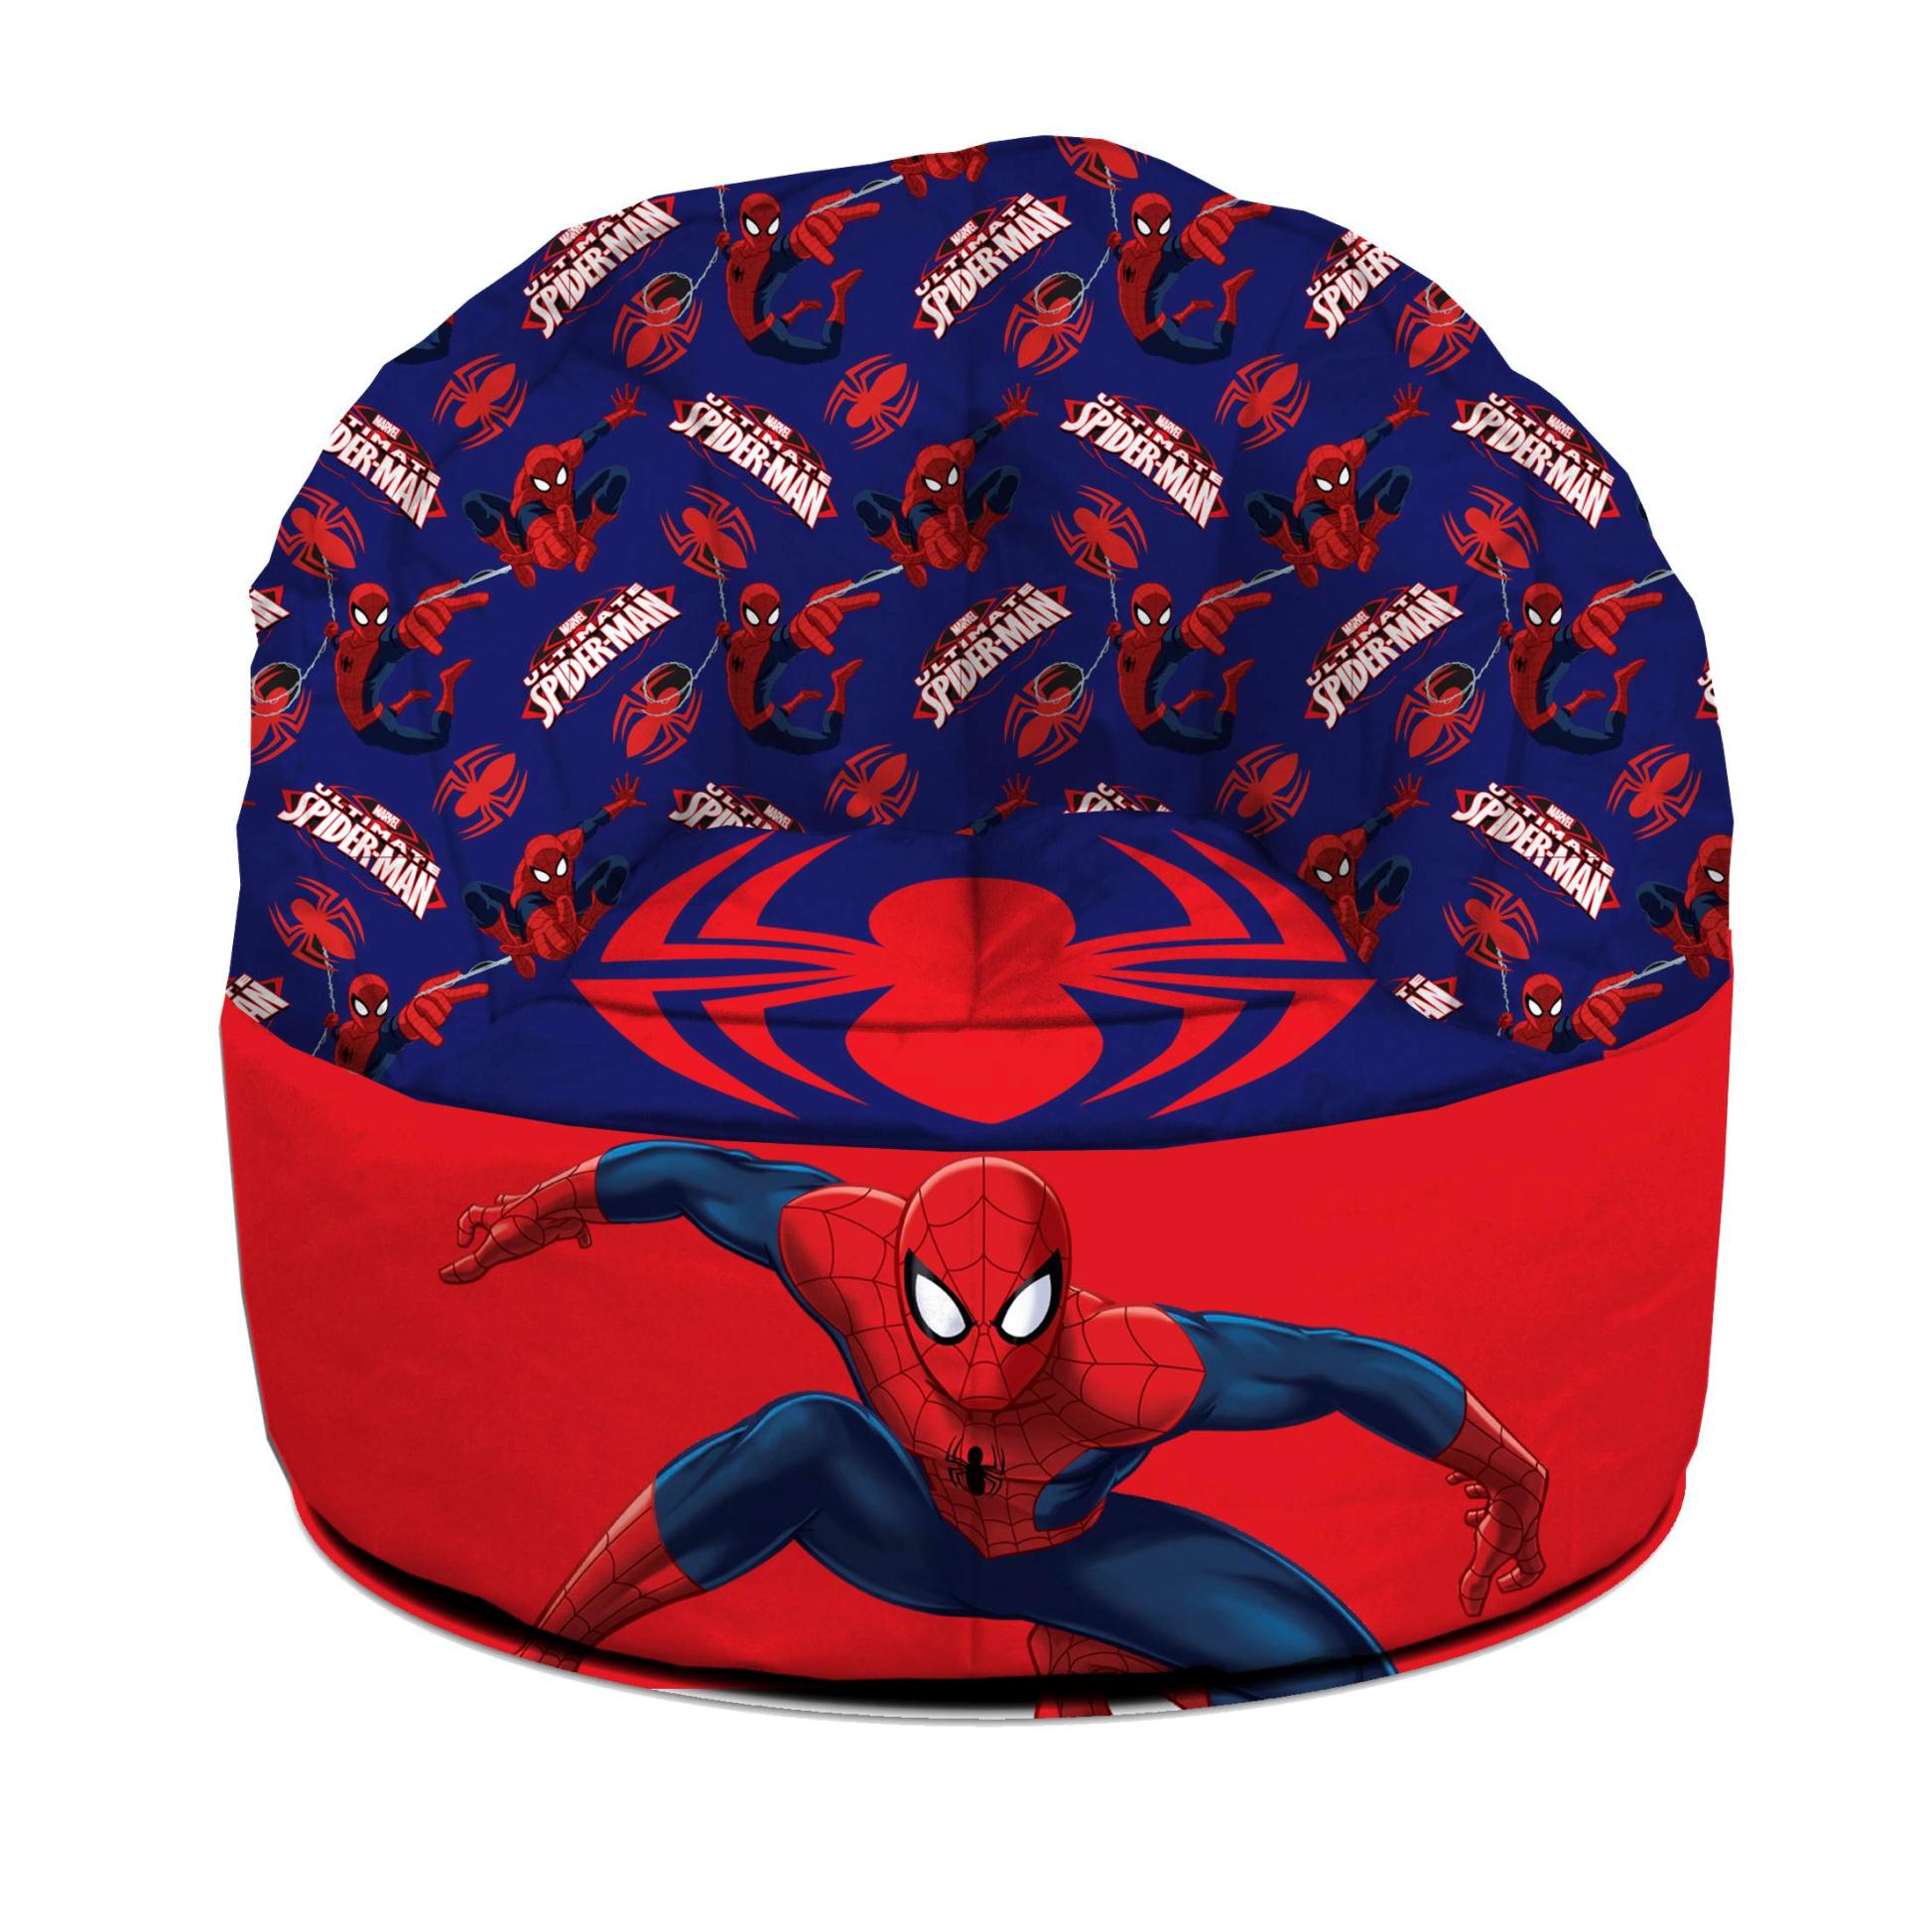 Disney Spiderman Bean Bag Chair